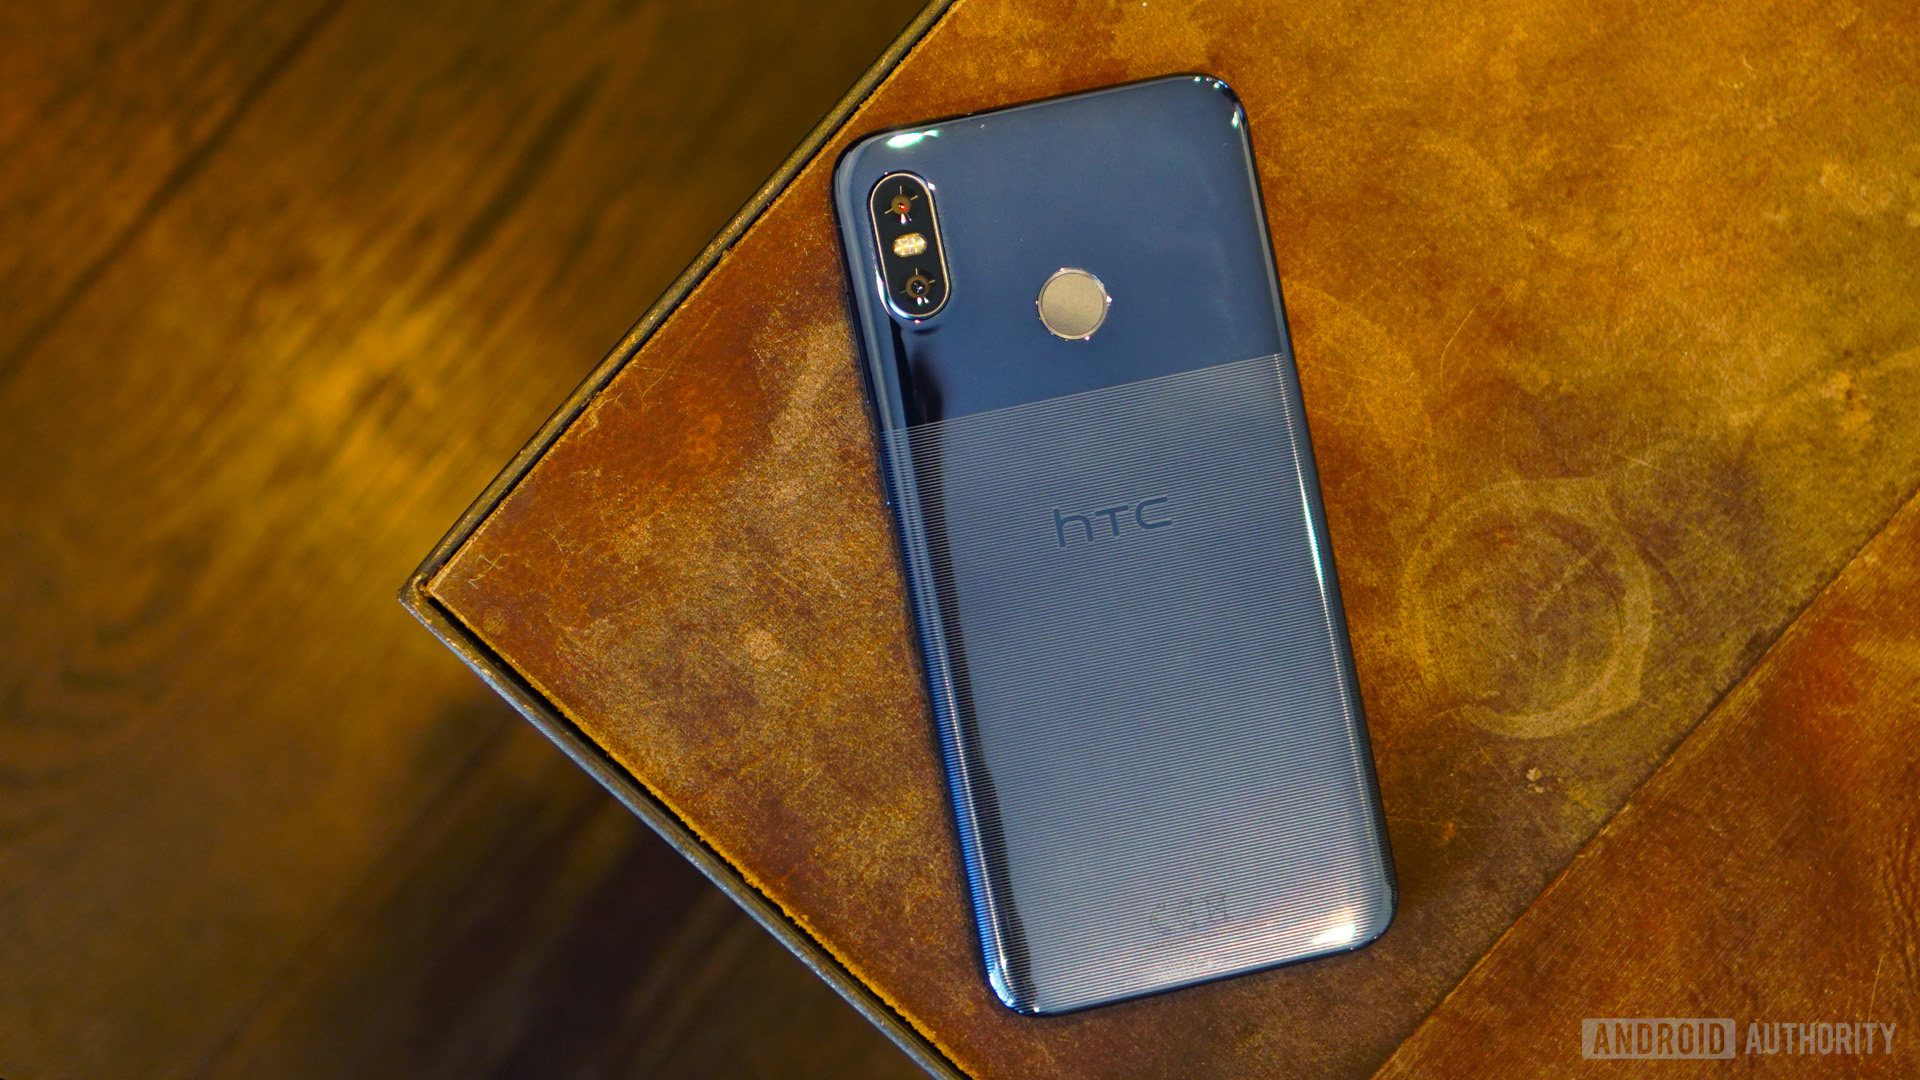 HTC in 2019: HTCU12 Life